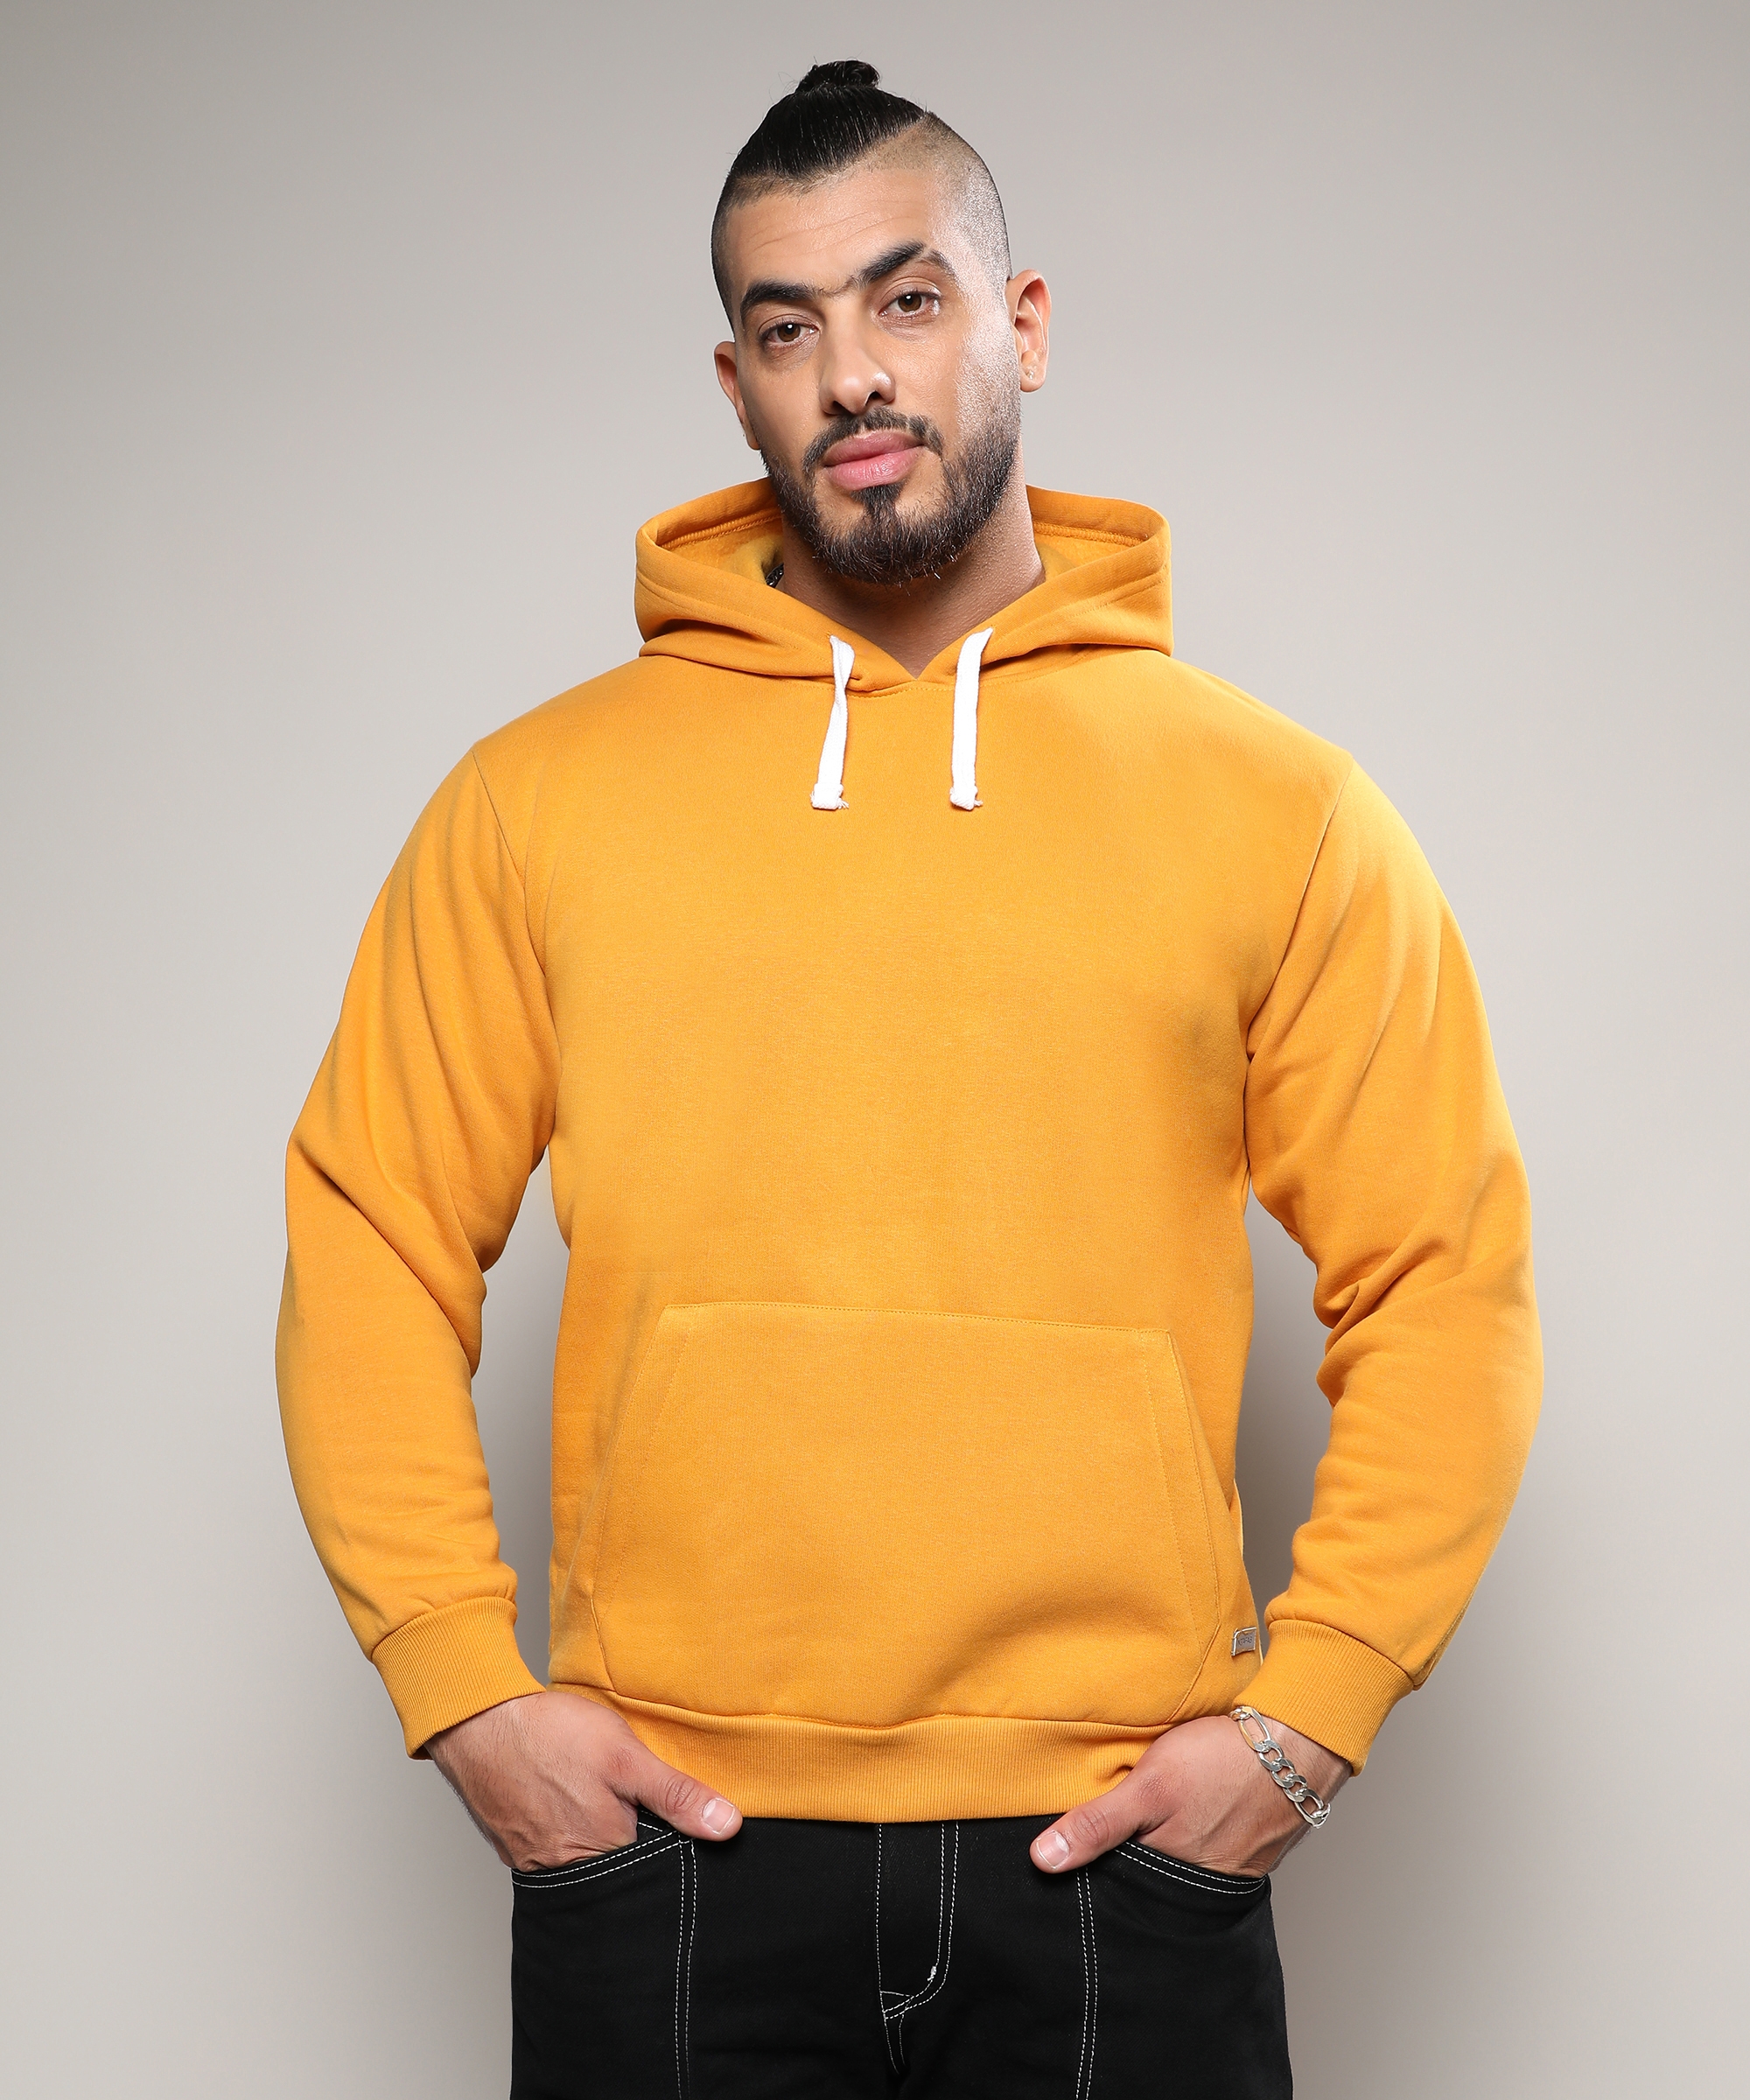 Instafab Plus | Men's Mustard Yellow Basic Hoodie With Kangaroo Pocket